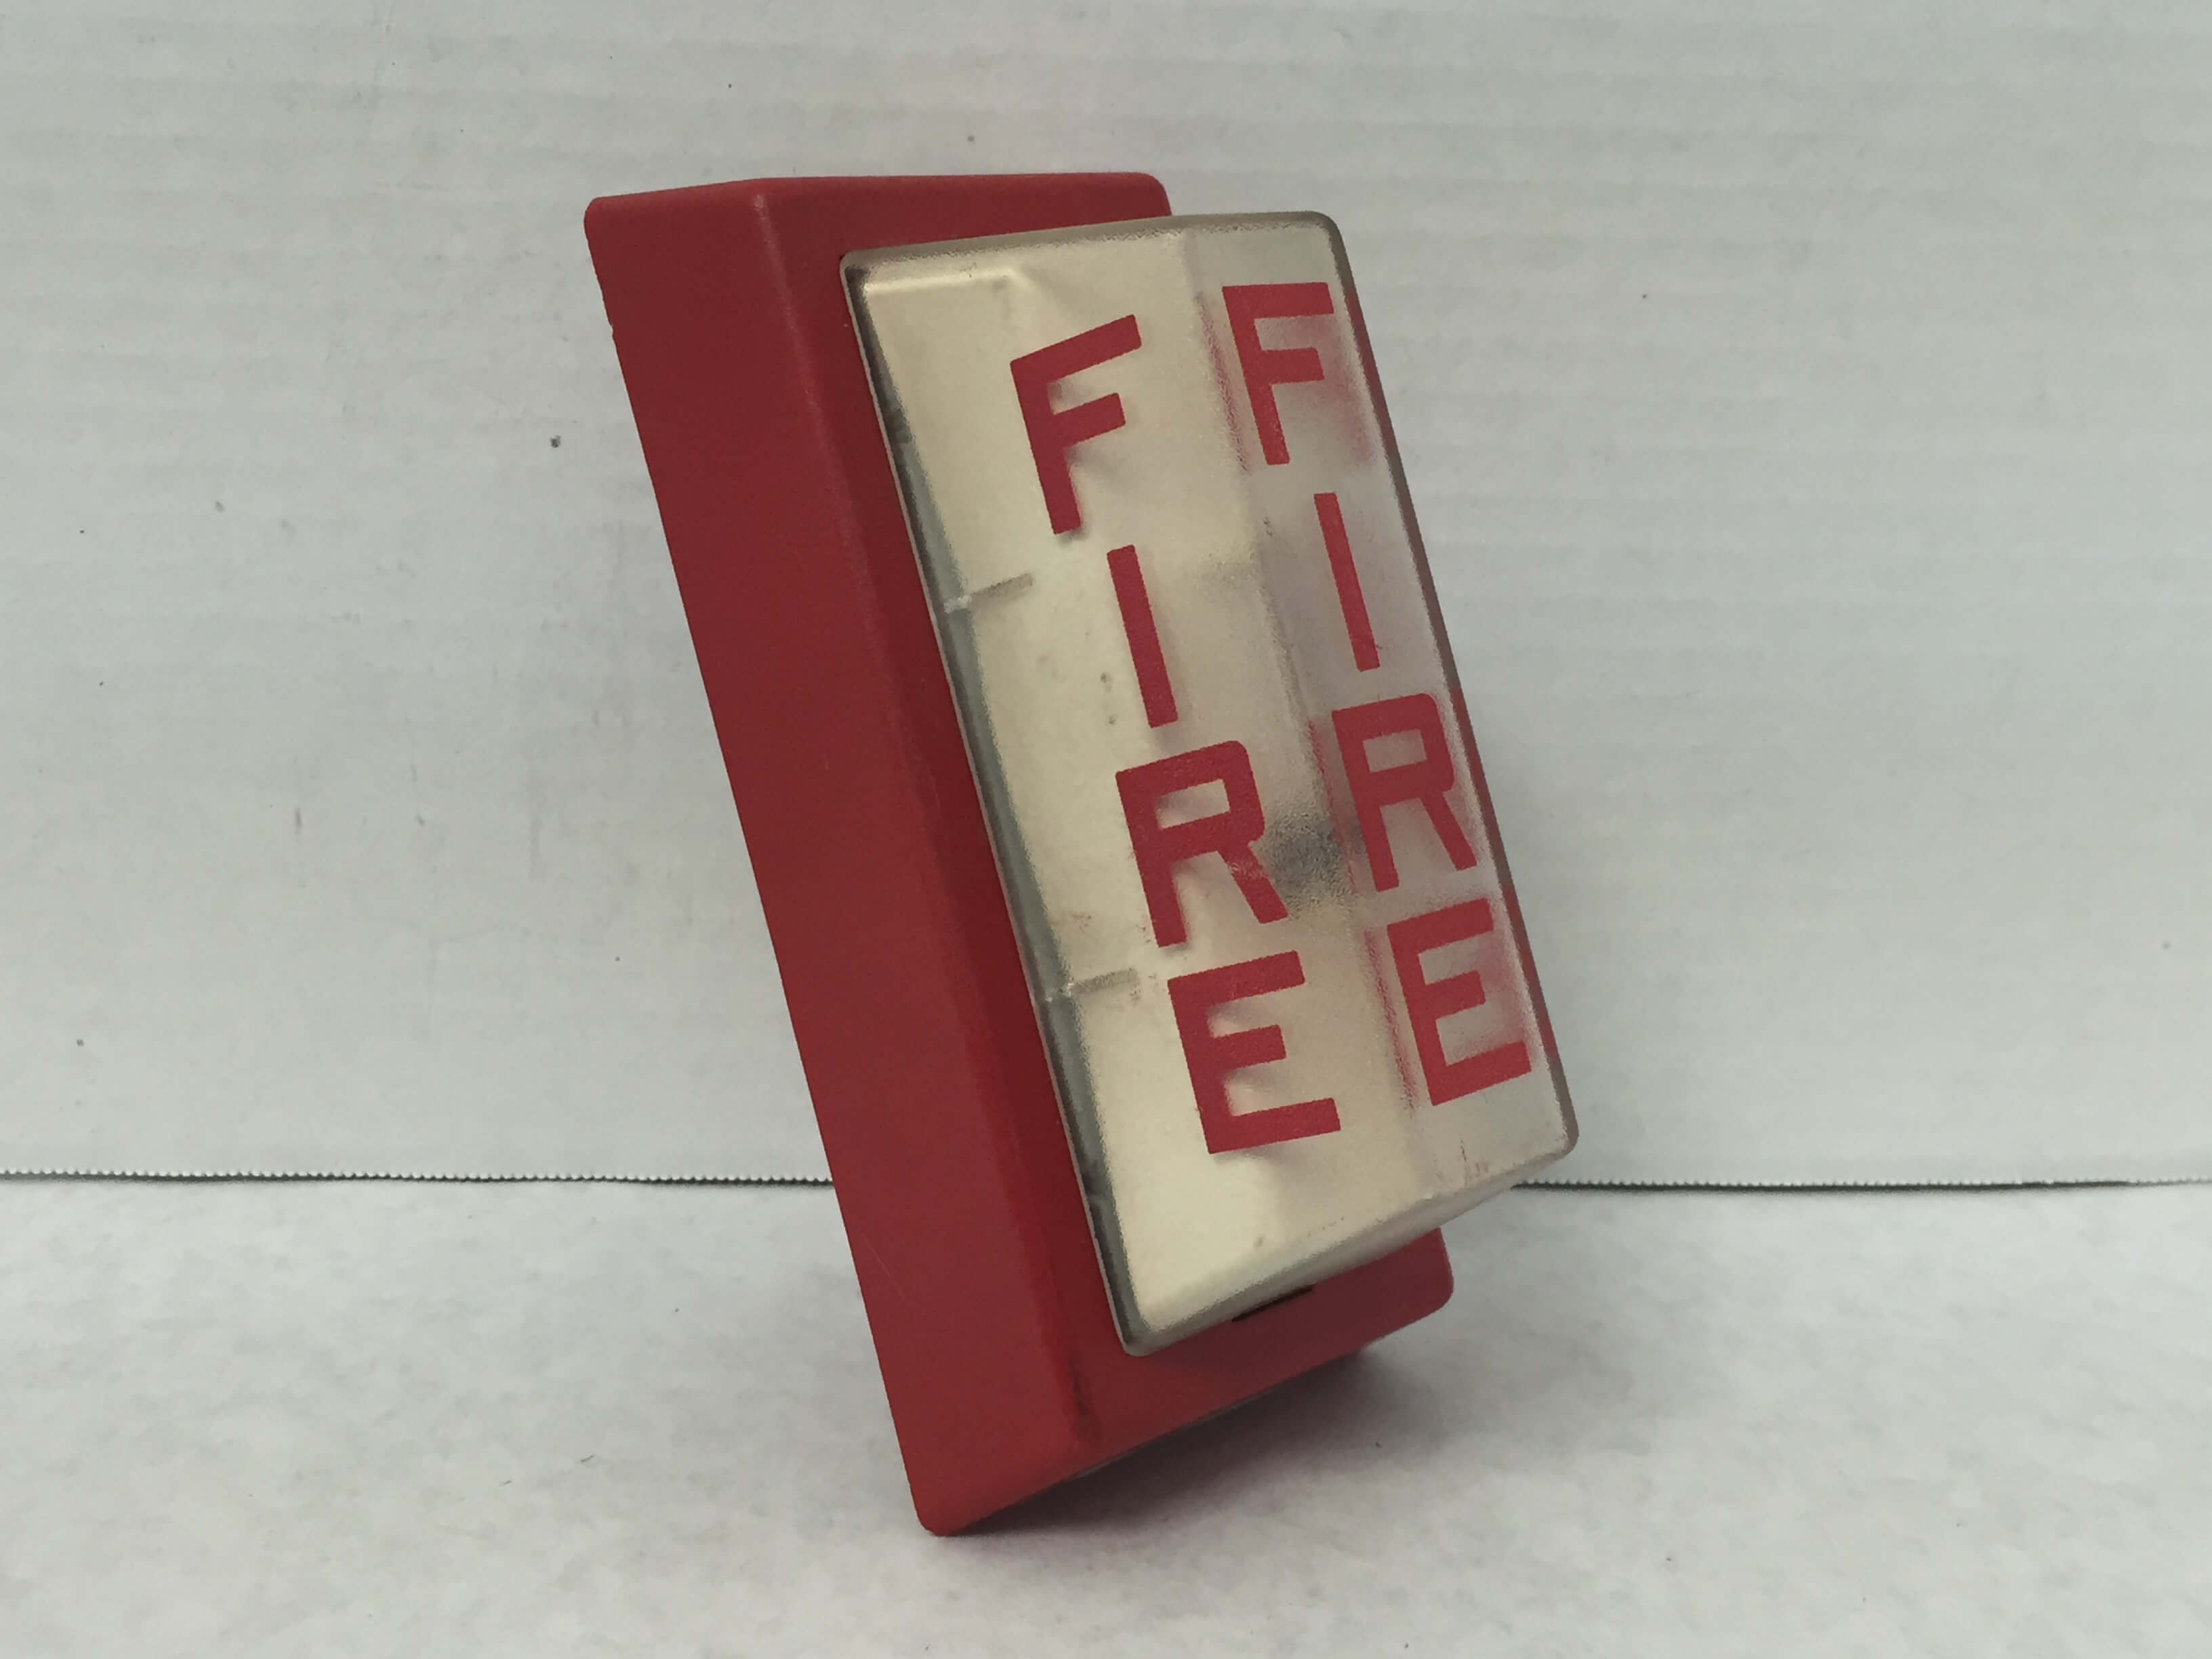 Simplex 4904-9101 - FireAlarms.tv - jjinc24/U8oL0's Fire Alarm ...